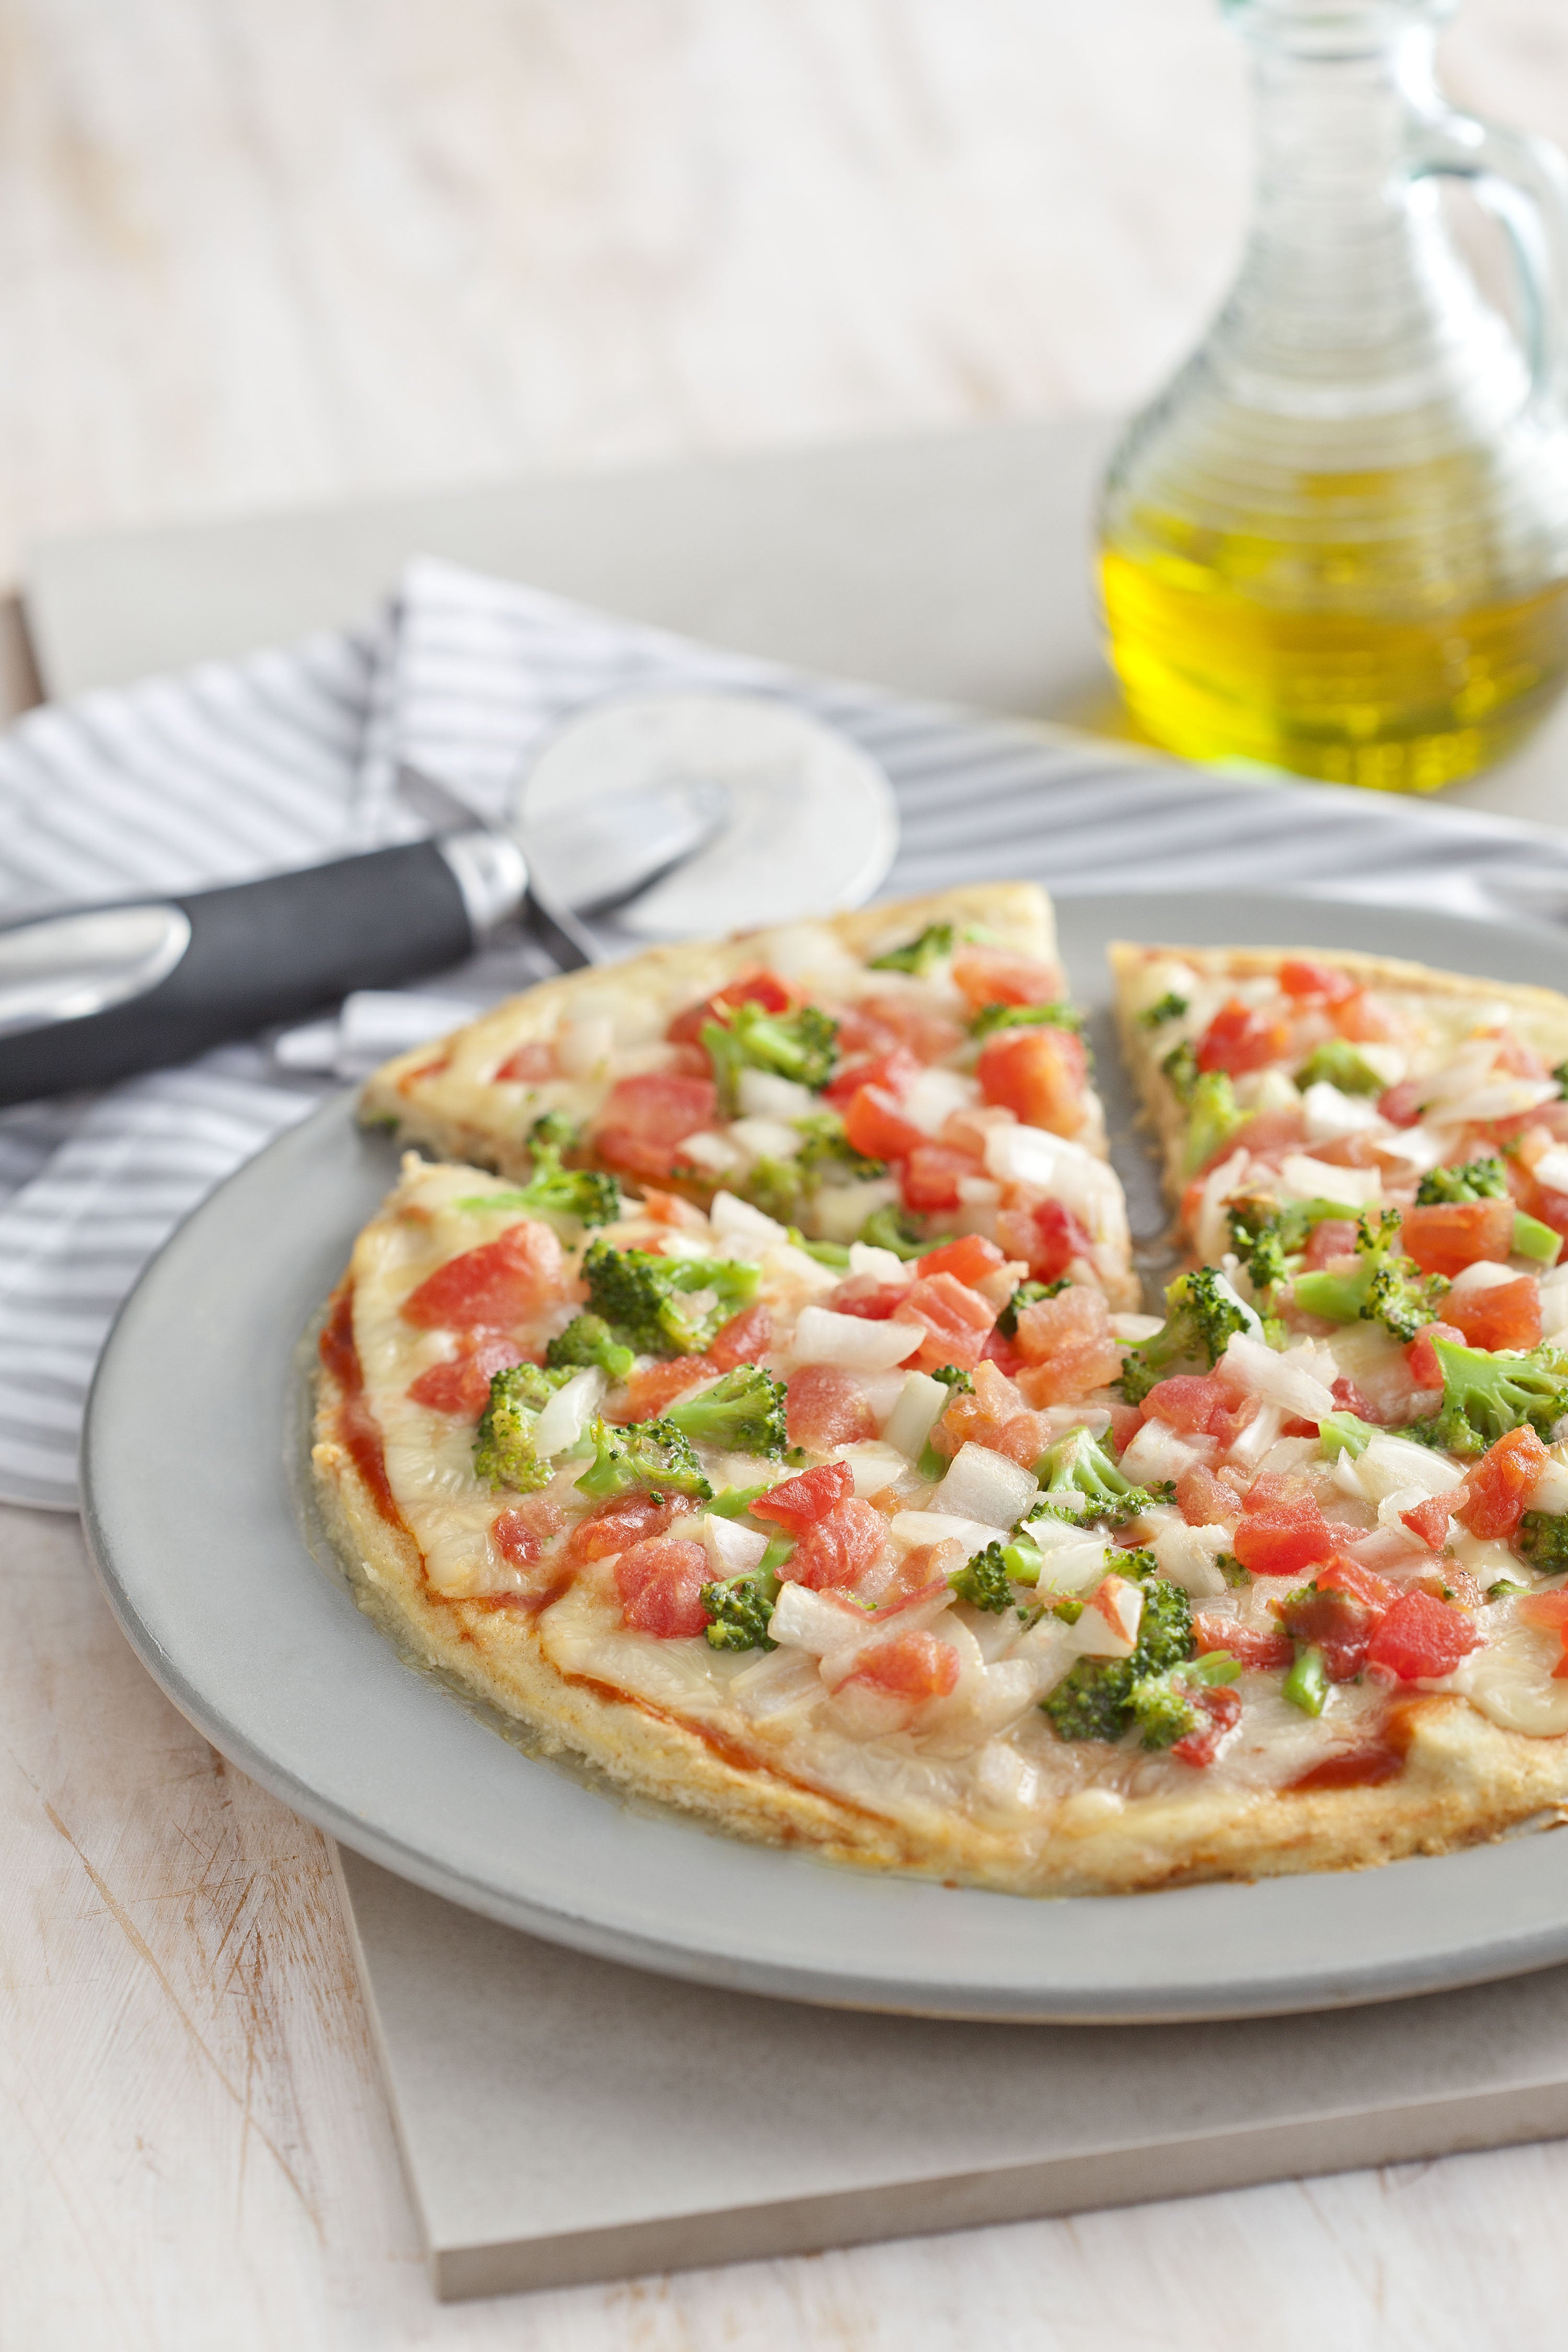 La fotografía en tonos blancos de una encimera de vista frontal contiene un plato blanco redondo con una pizza con trozos de tomate y brócoli en el fondo y una jarra de aceite.